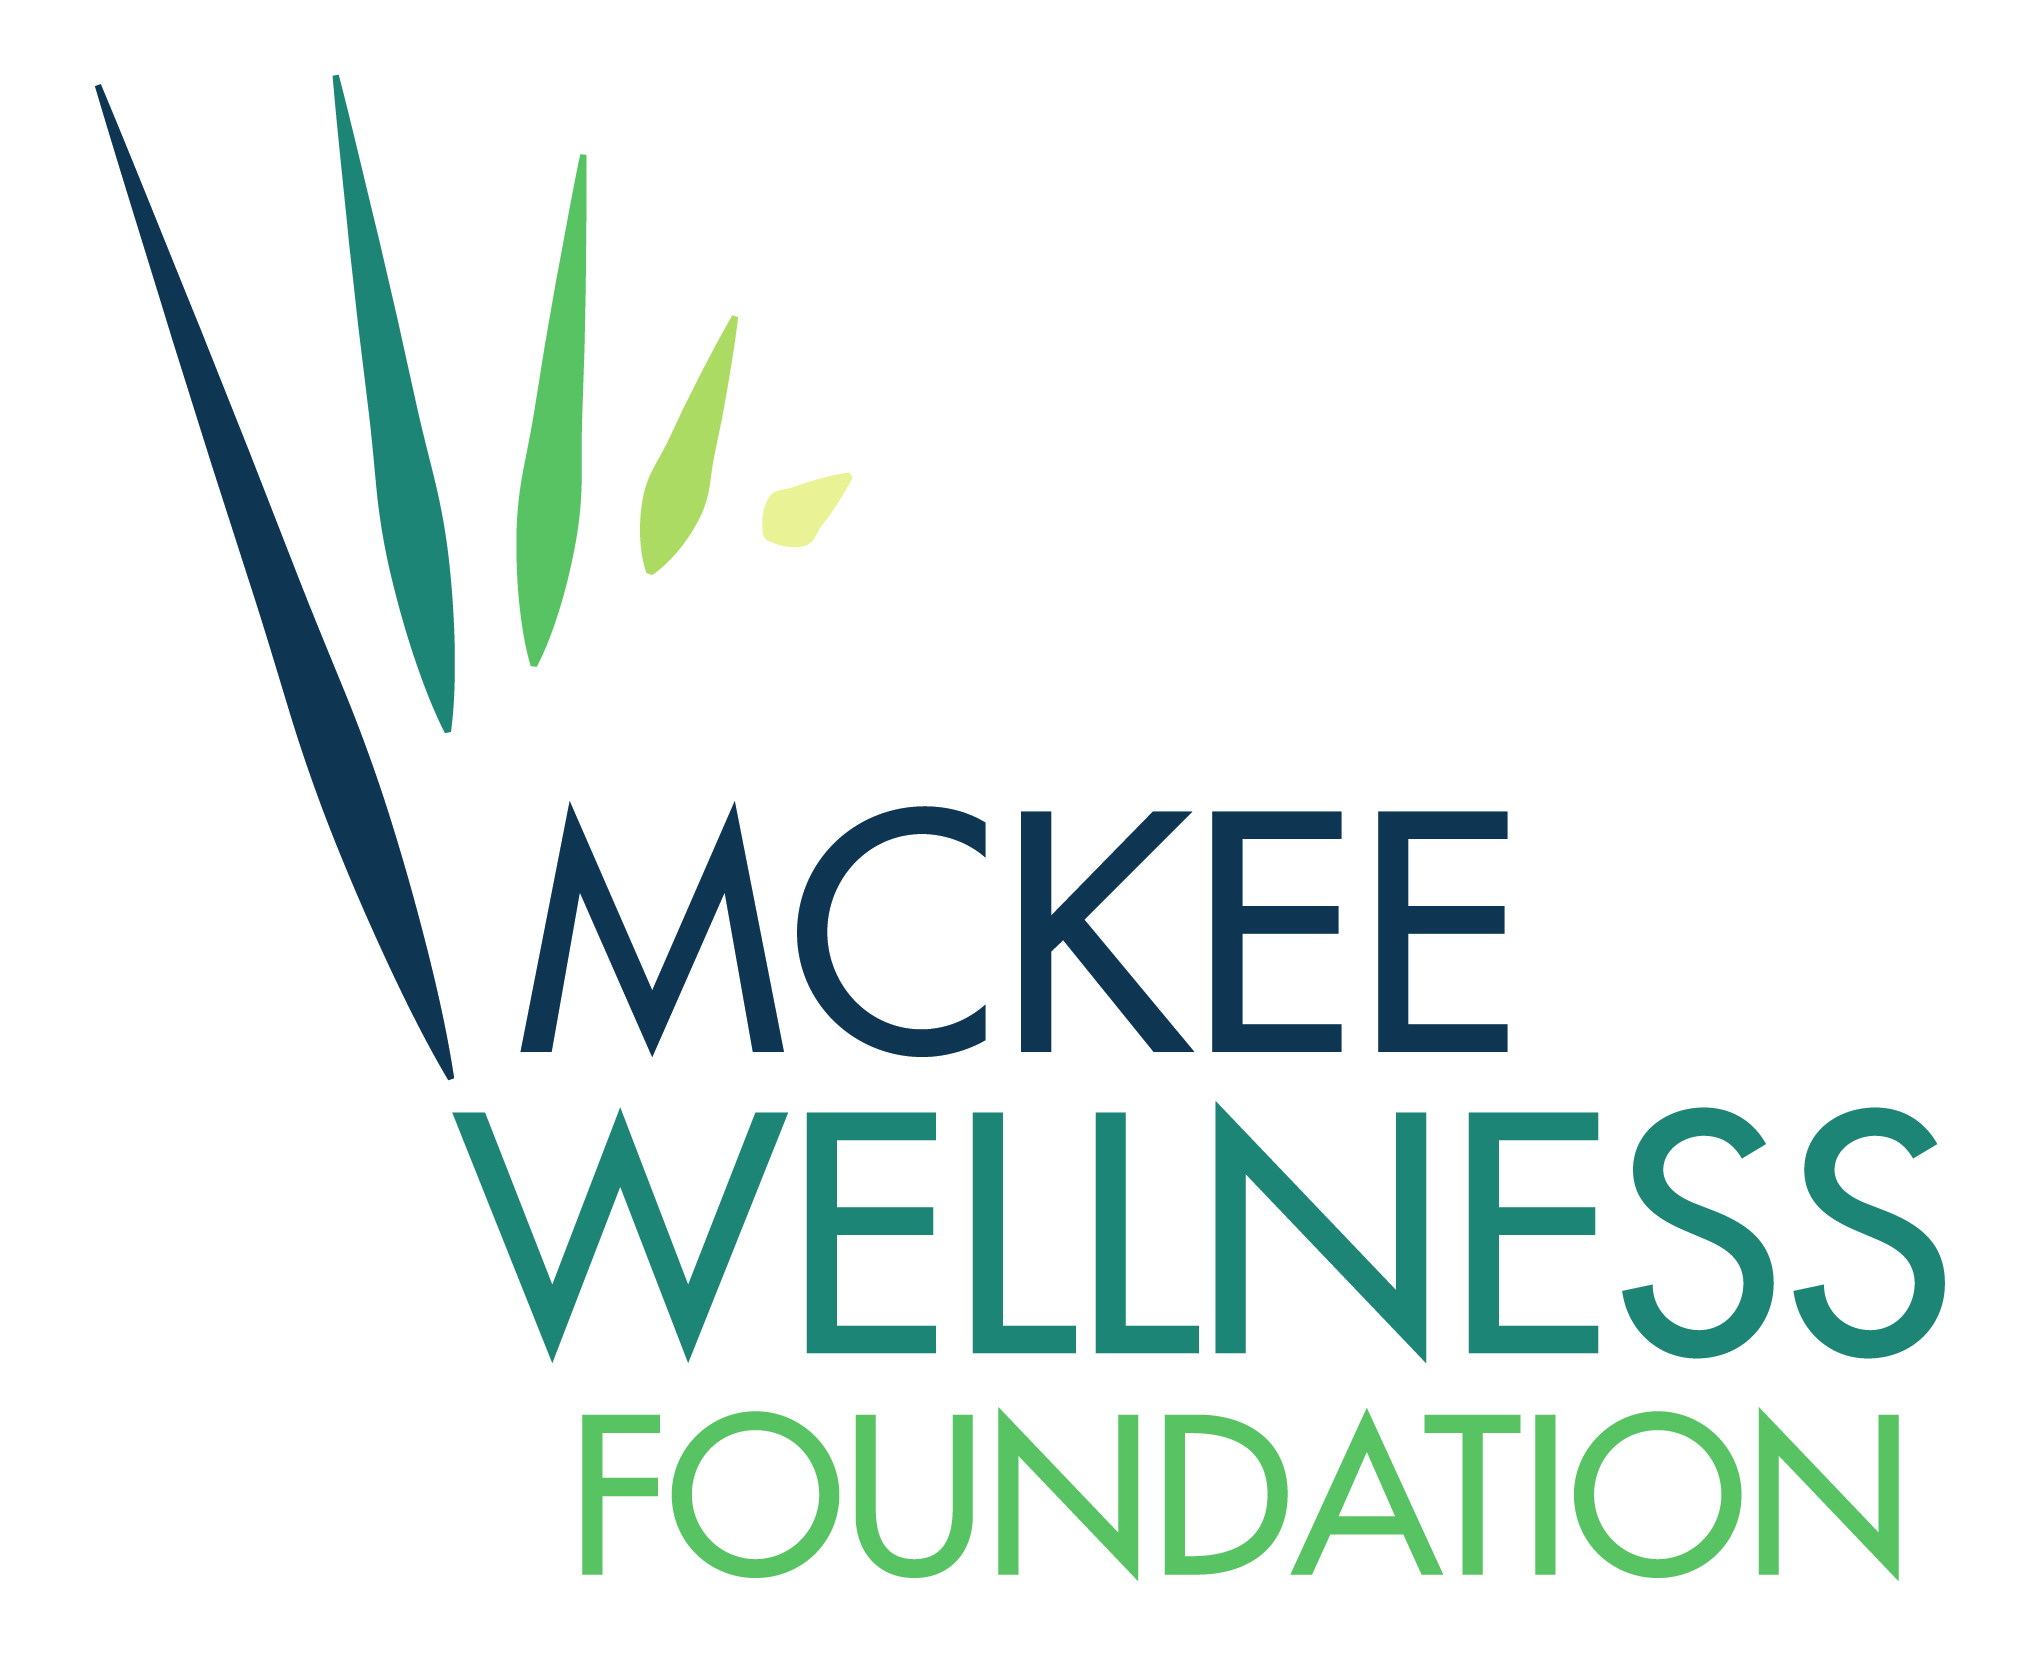 McKee Wellness Foundation